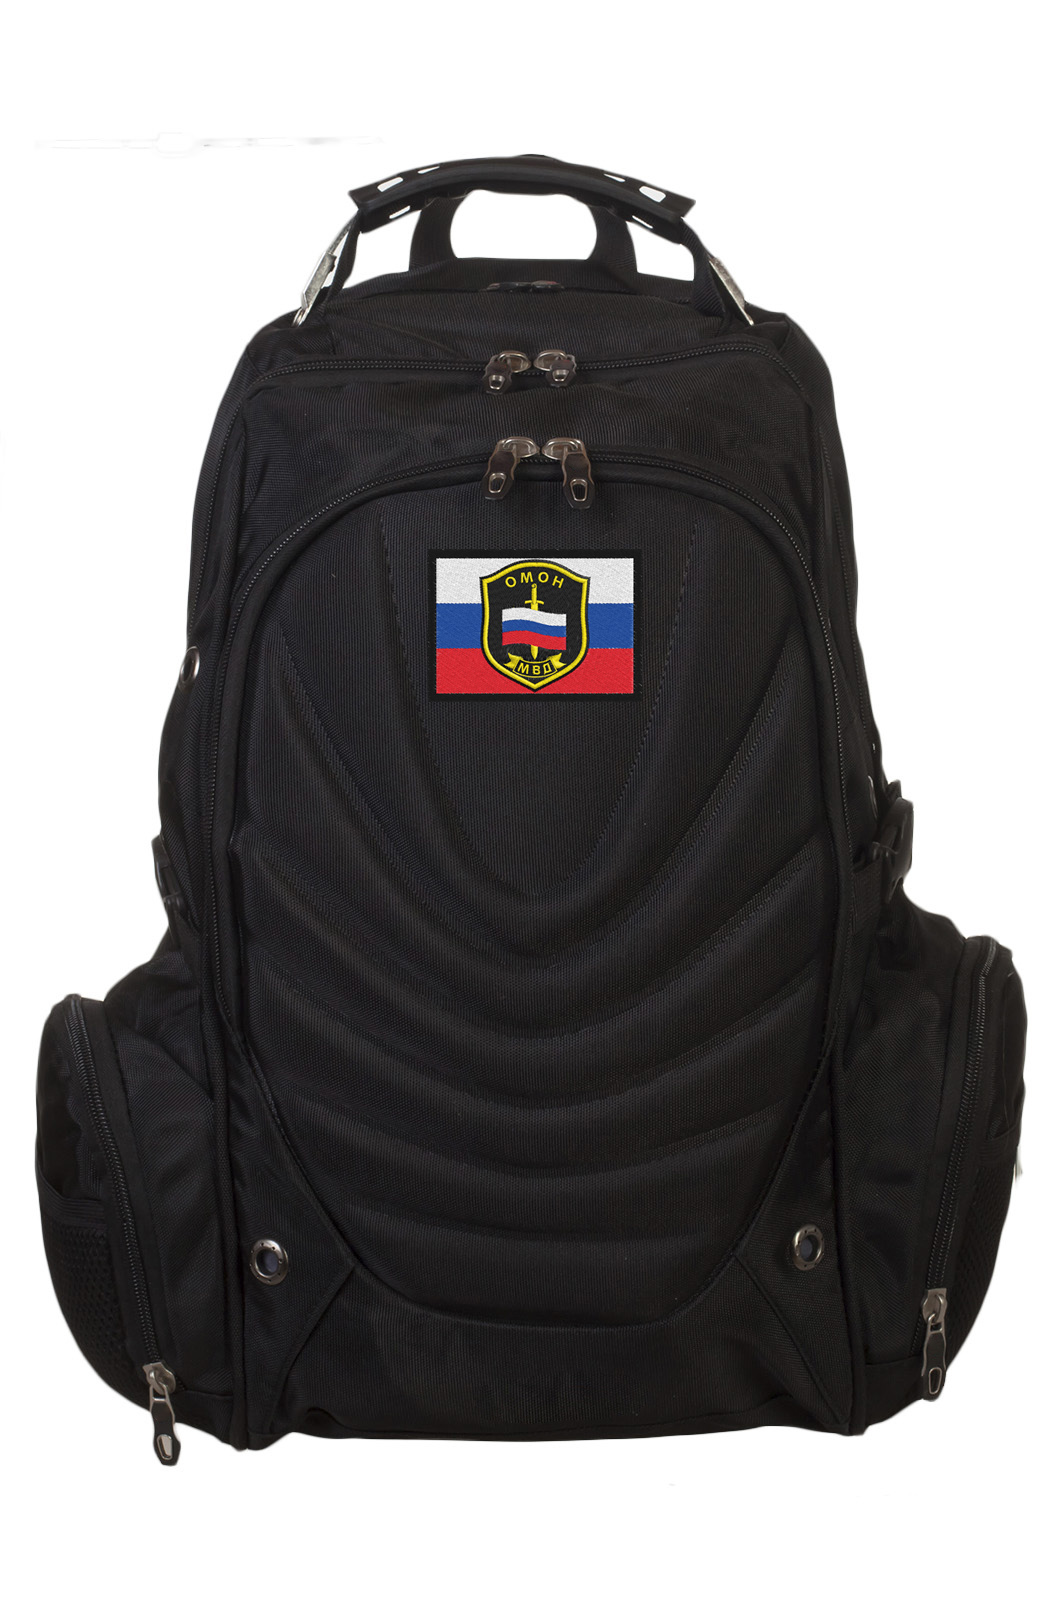 Купить удобный вместительный рюкзак с нашивкой ОМОН с доставкой или самовывозом